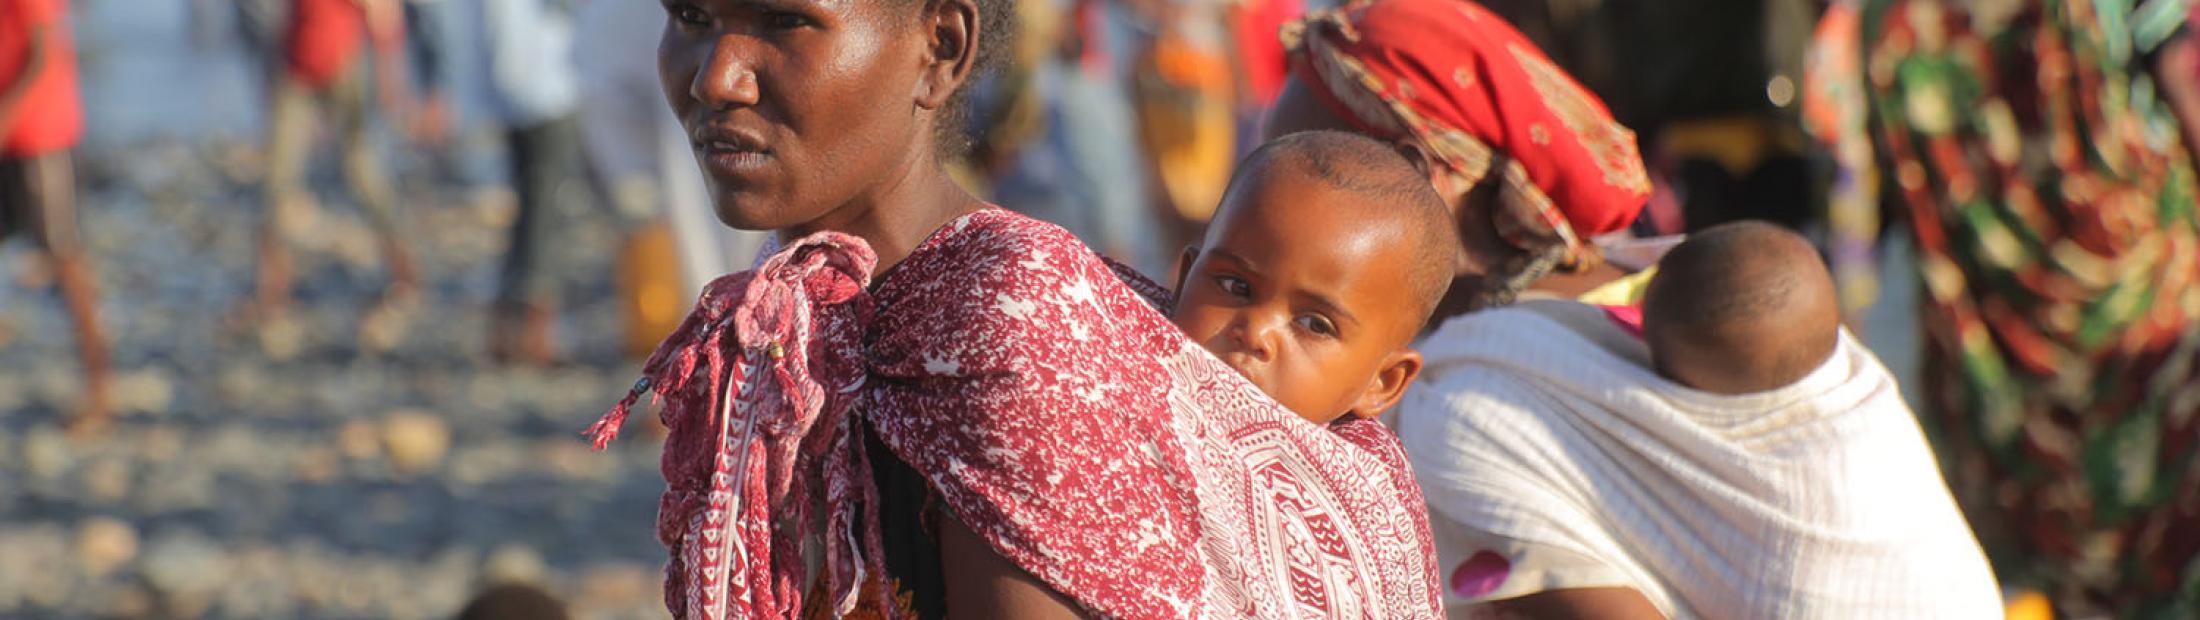 La crisis en el norte de Etiopía obliga a huir a miles de personas